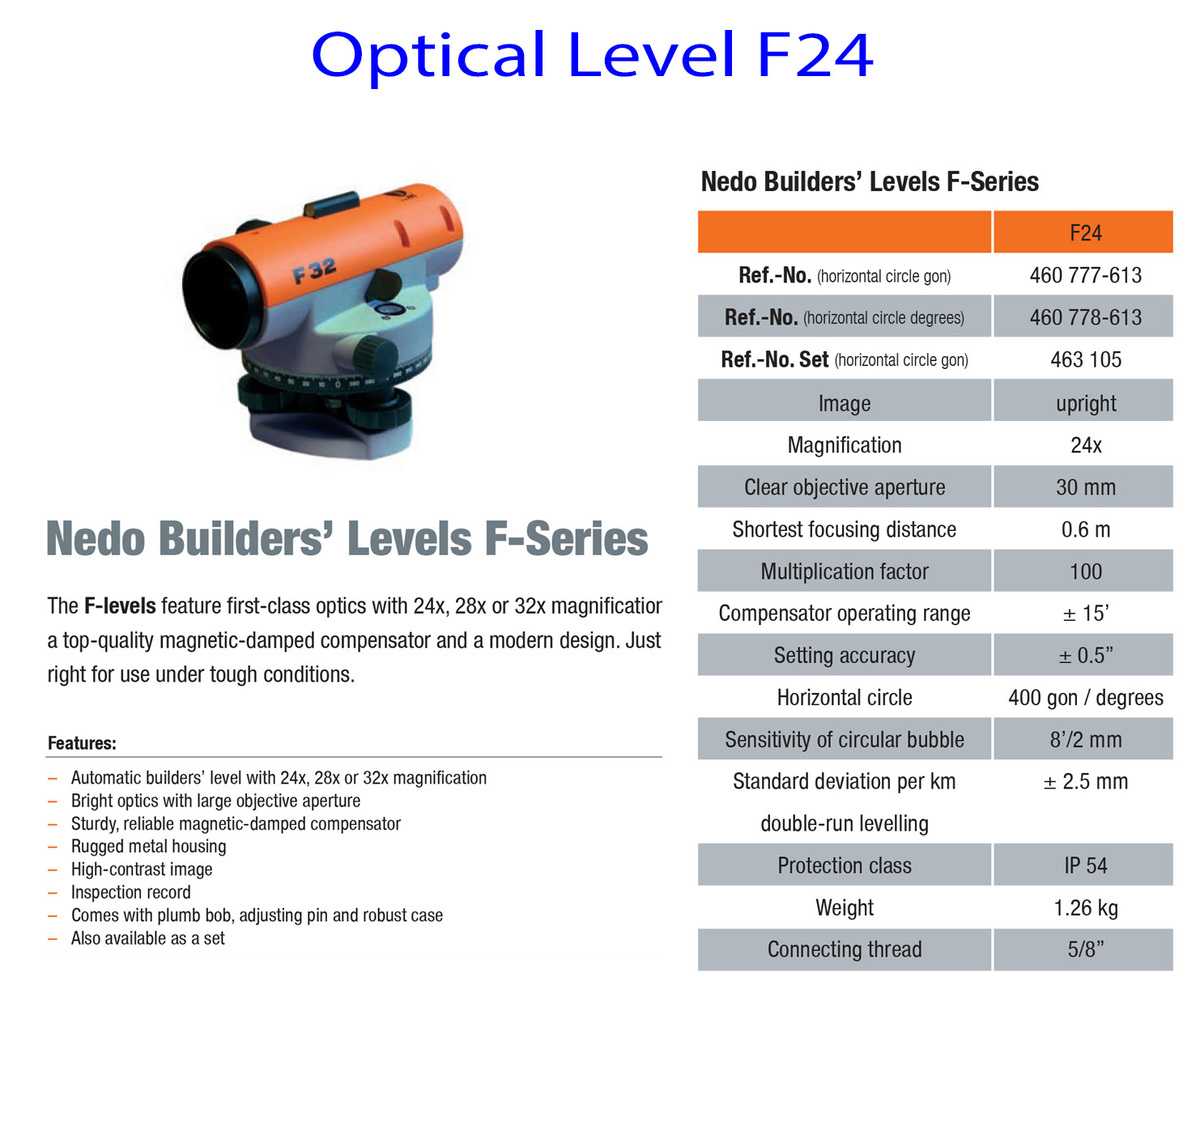 Optical-LEvel-F24-info.jpg#asset:7610